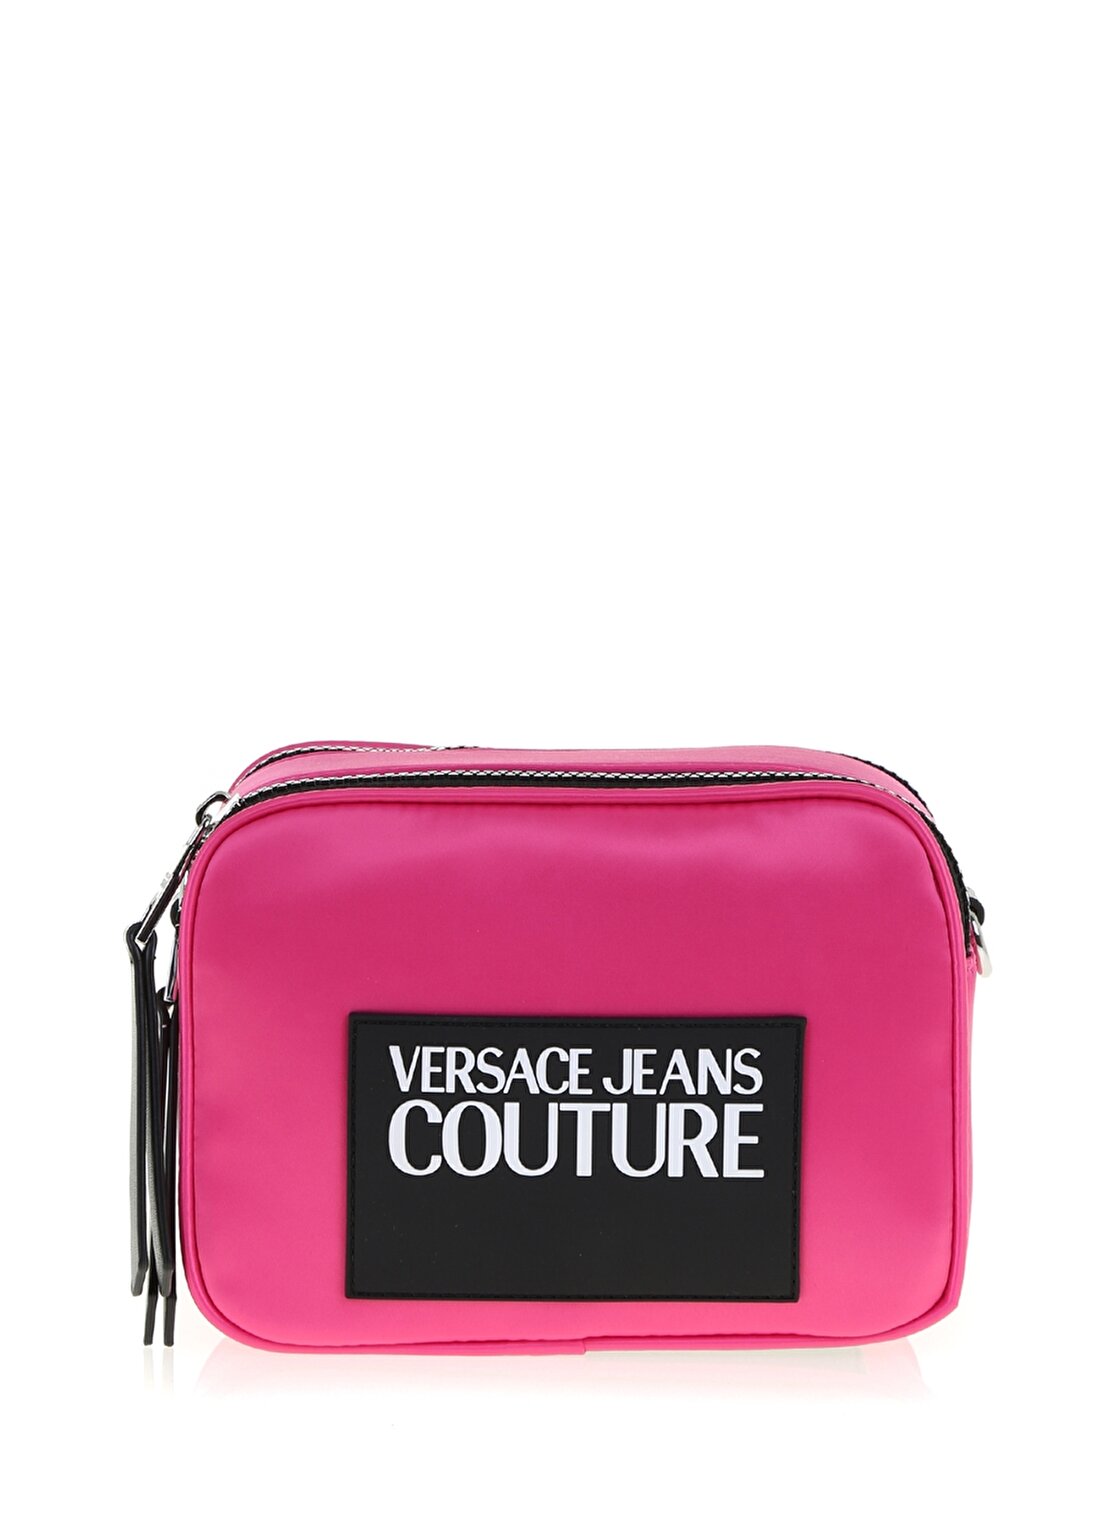 Versace Jeans Fuşya Omuz Çantası